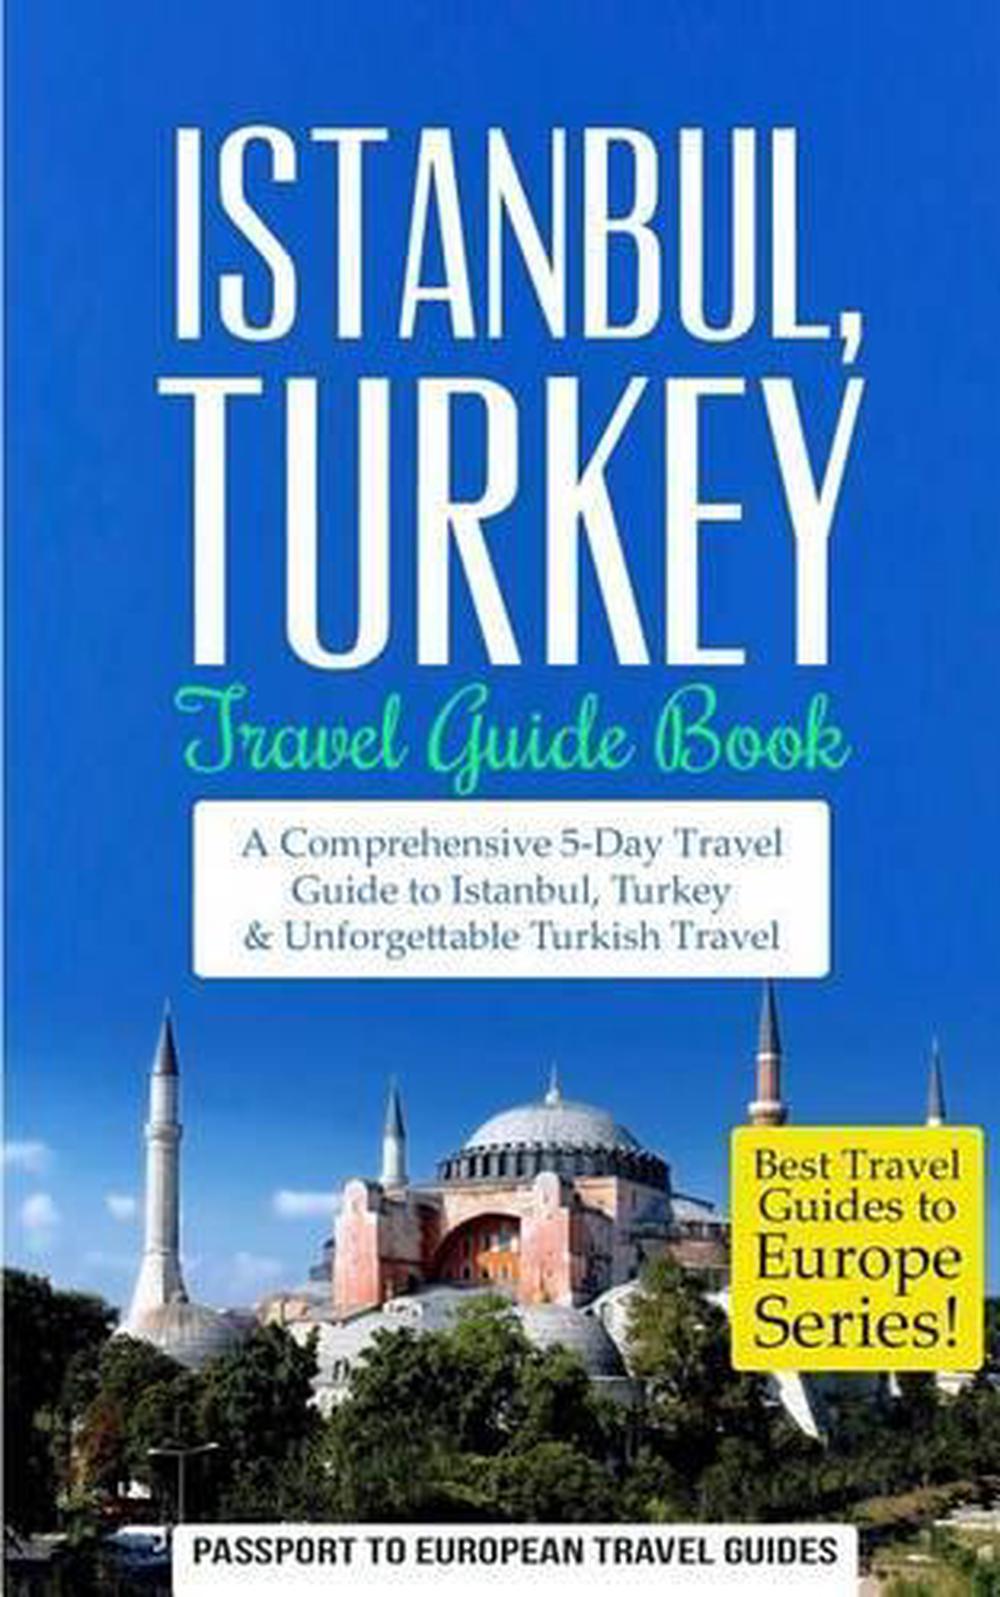 book a tour to turkey